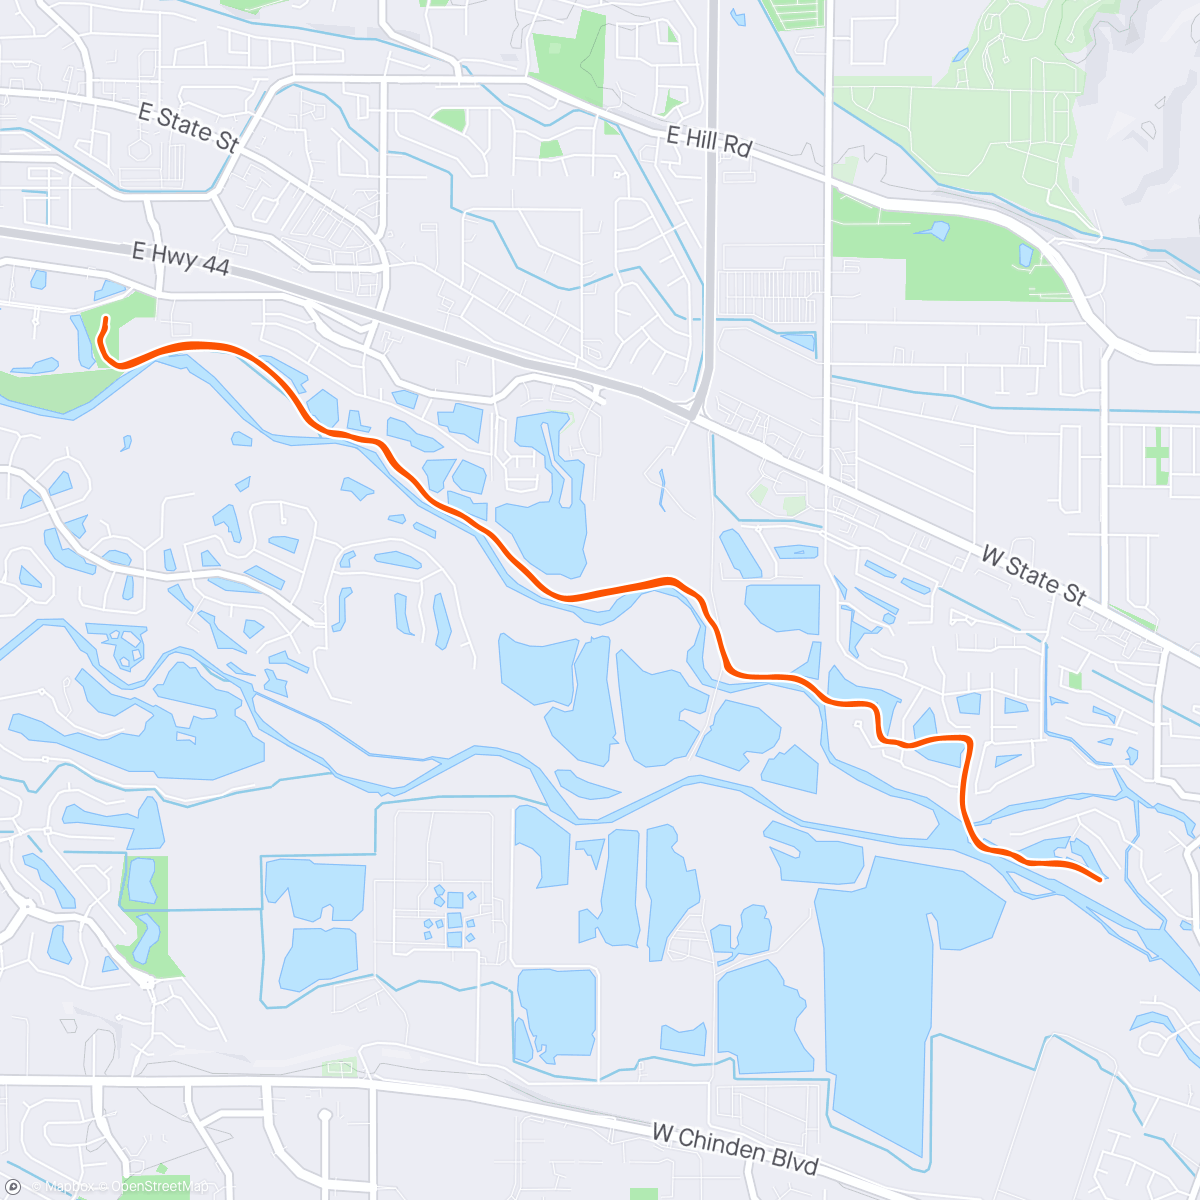 「Boise River Greenbelt - Merrill Park」活動的地圖